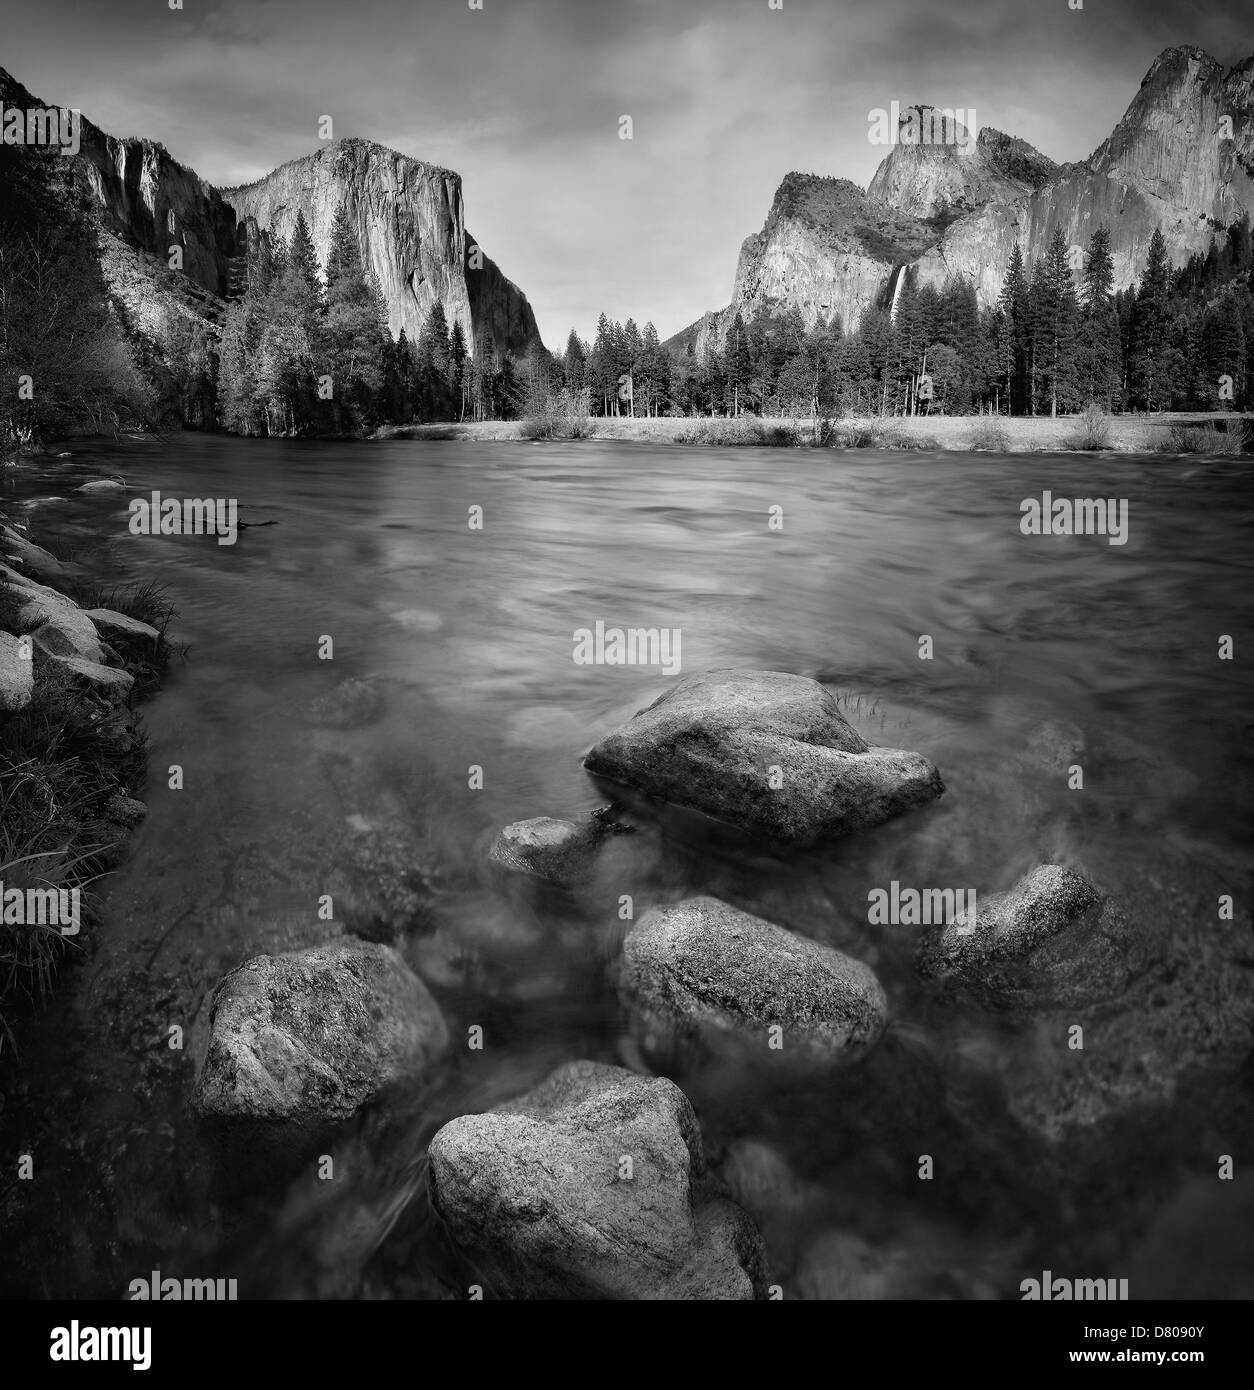 Blurred view of water rushing over rocks, Yosemite, California, United States Stock Photo